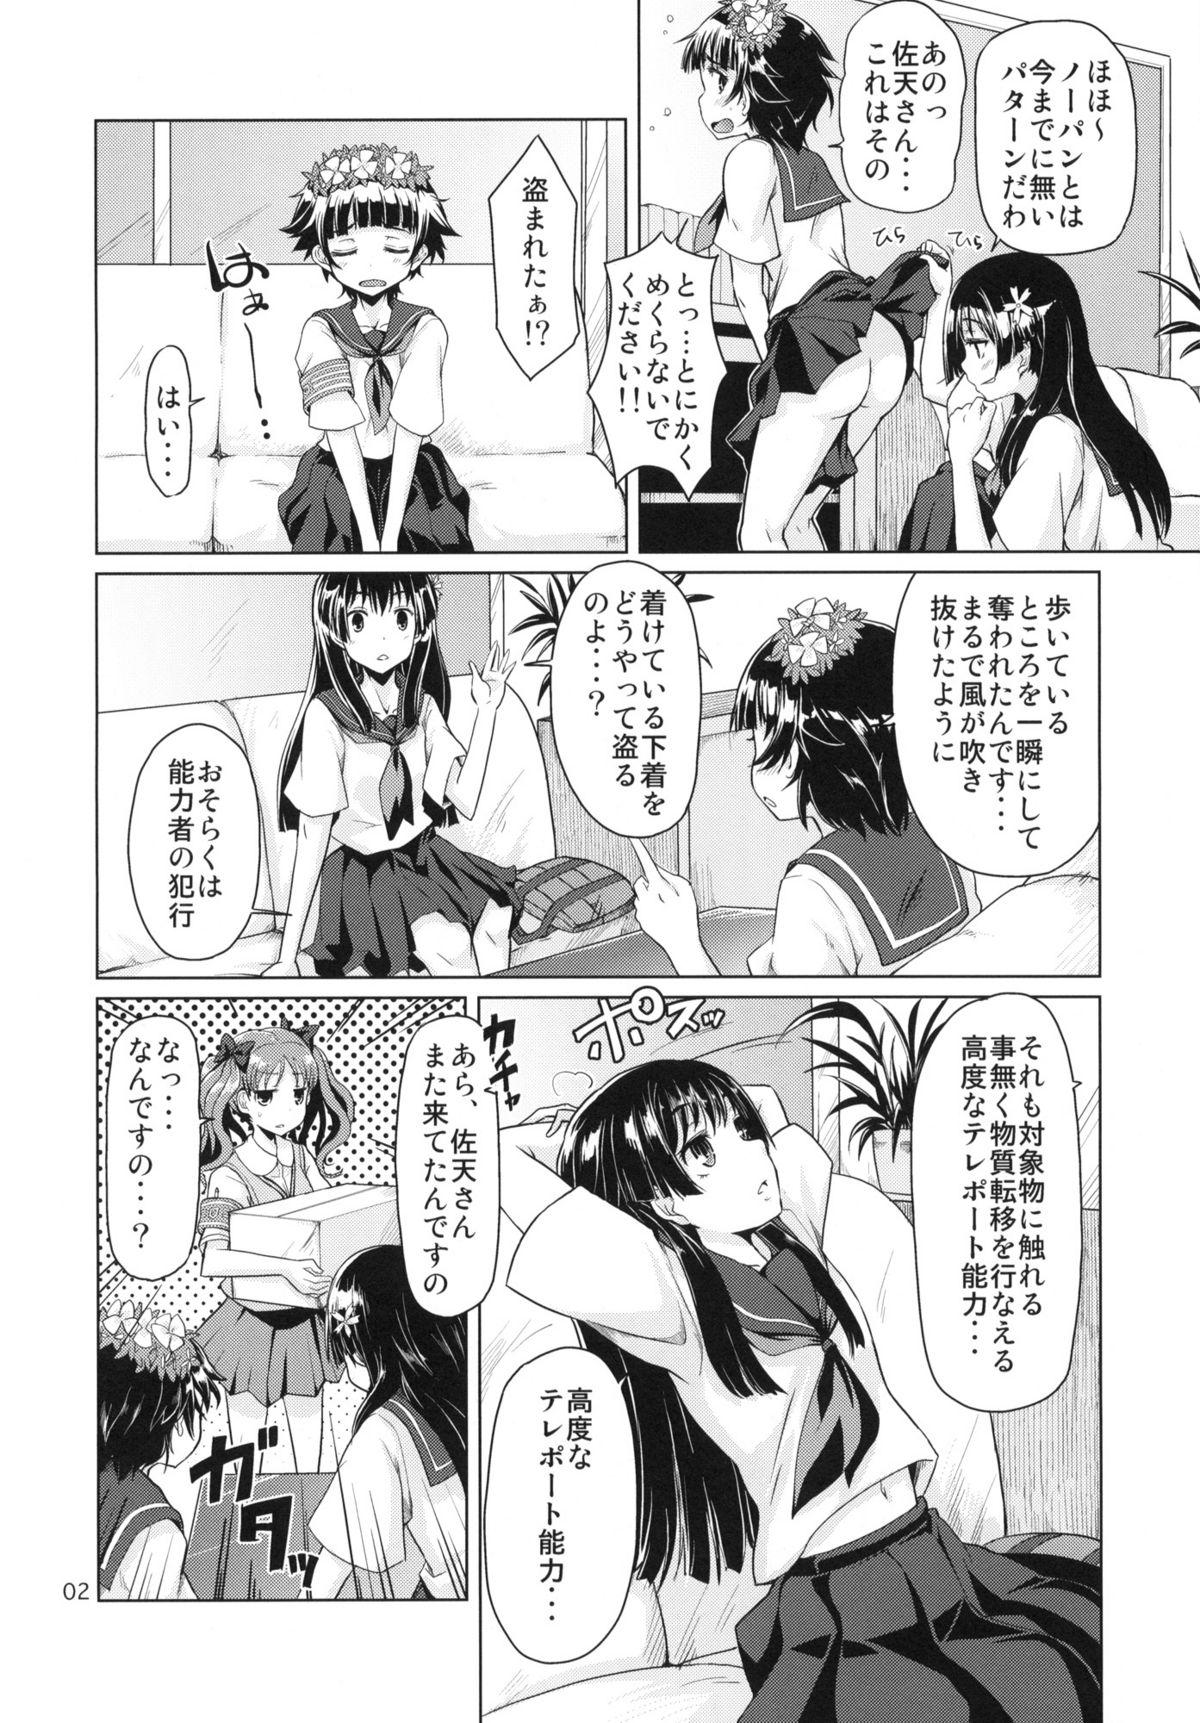 Candid i.Saten - Toaru kagaku no railgun Class Room - Page 3